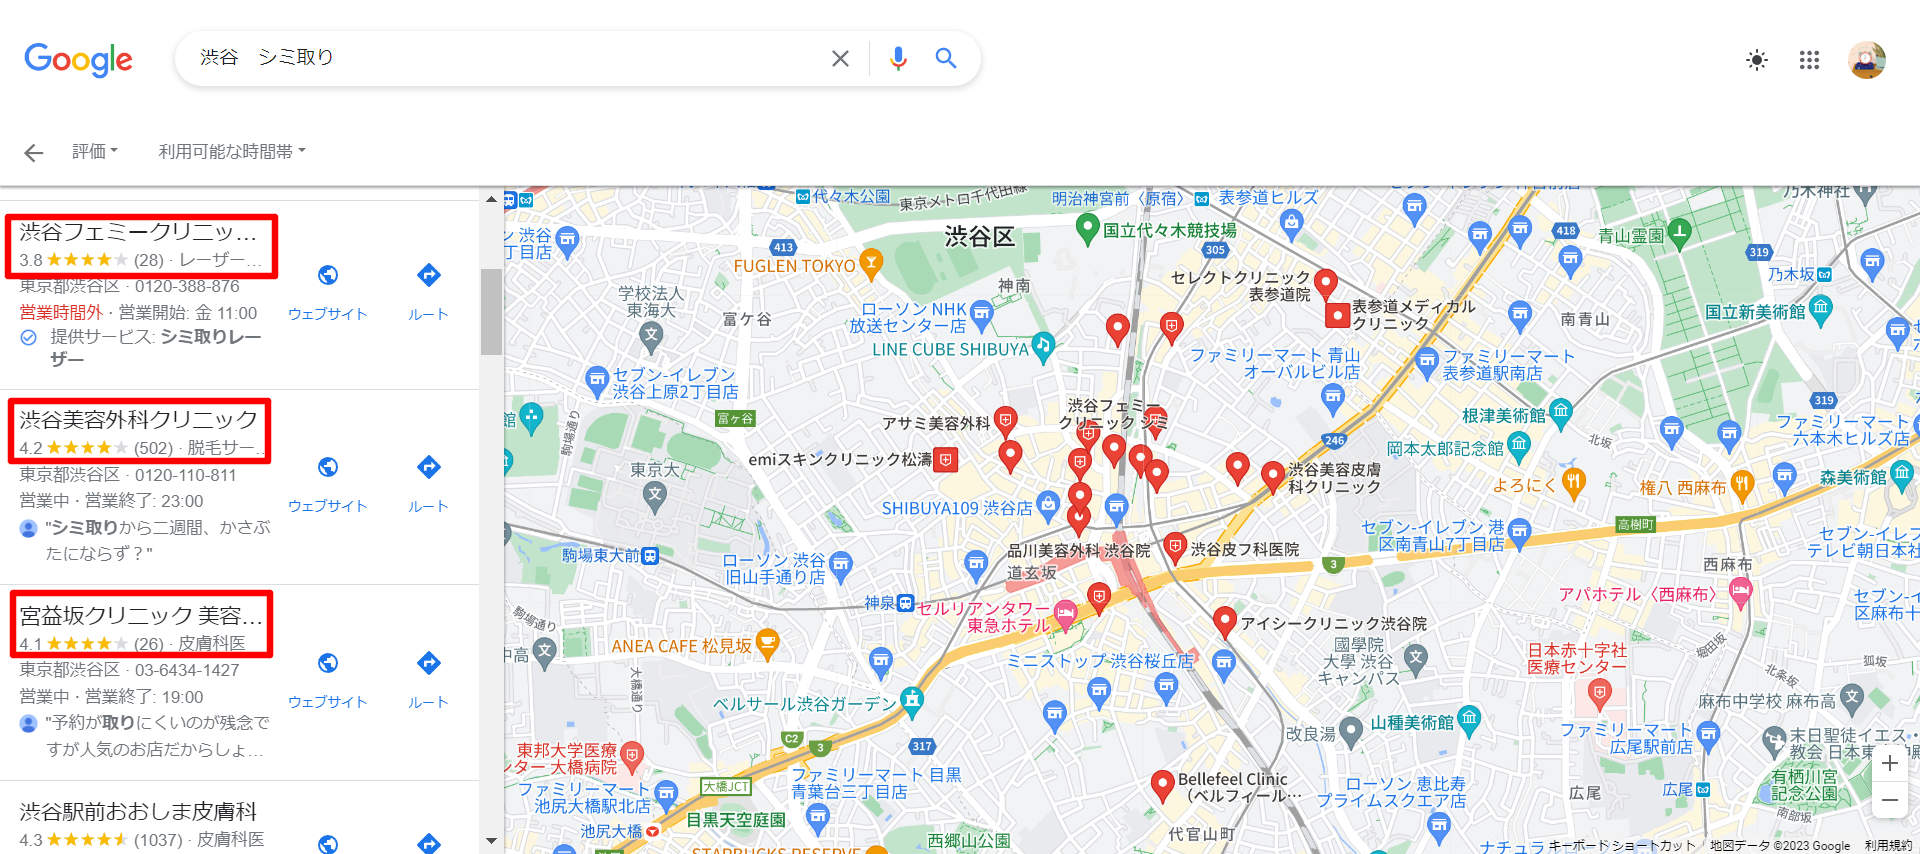 渋谷-シミ取り-Google-検索